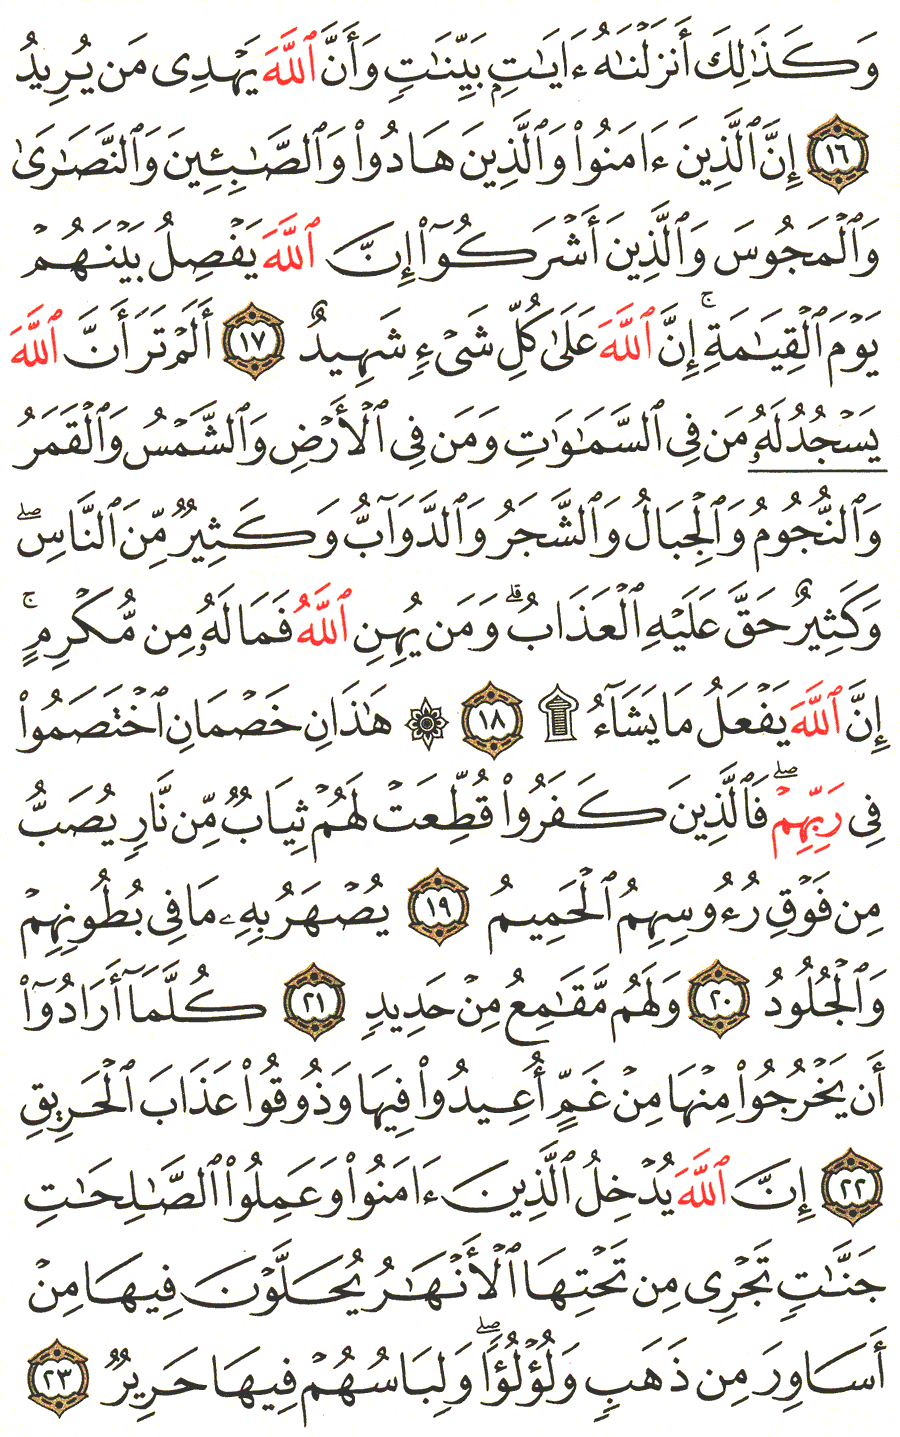 الصفحة رقم 334  من القرآن الكريم مكتوبة من المصحف